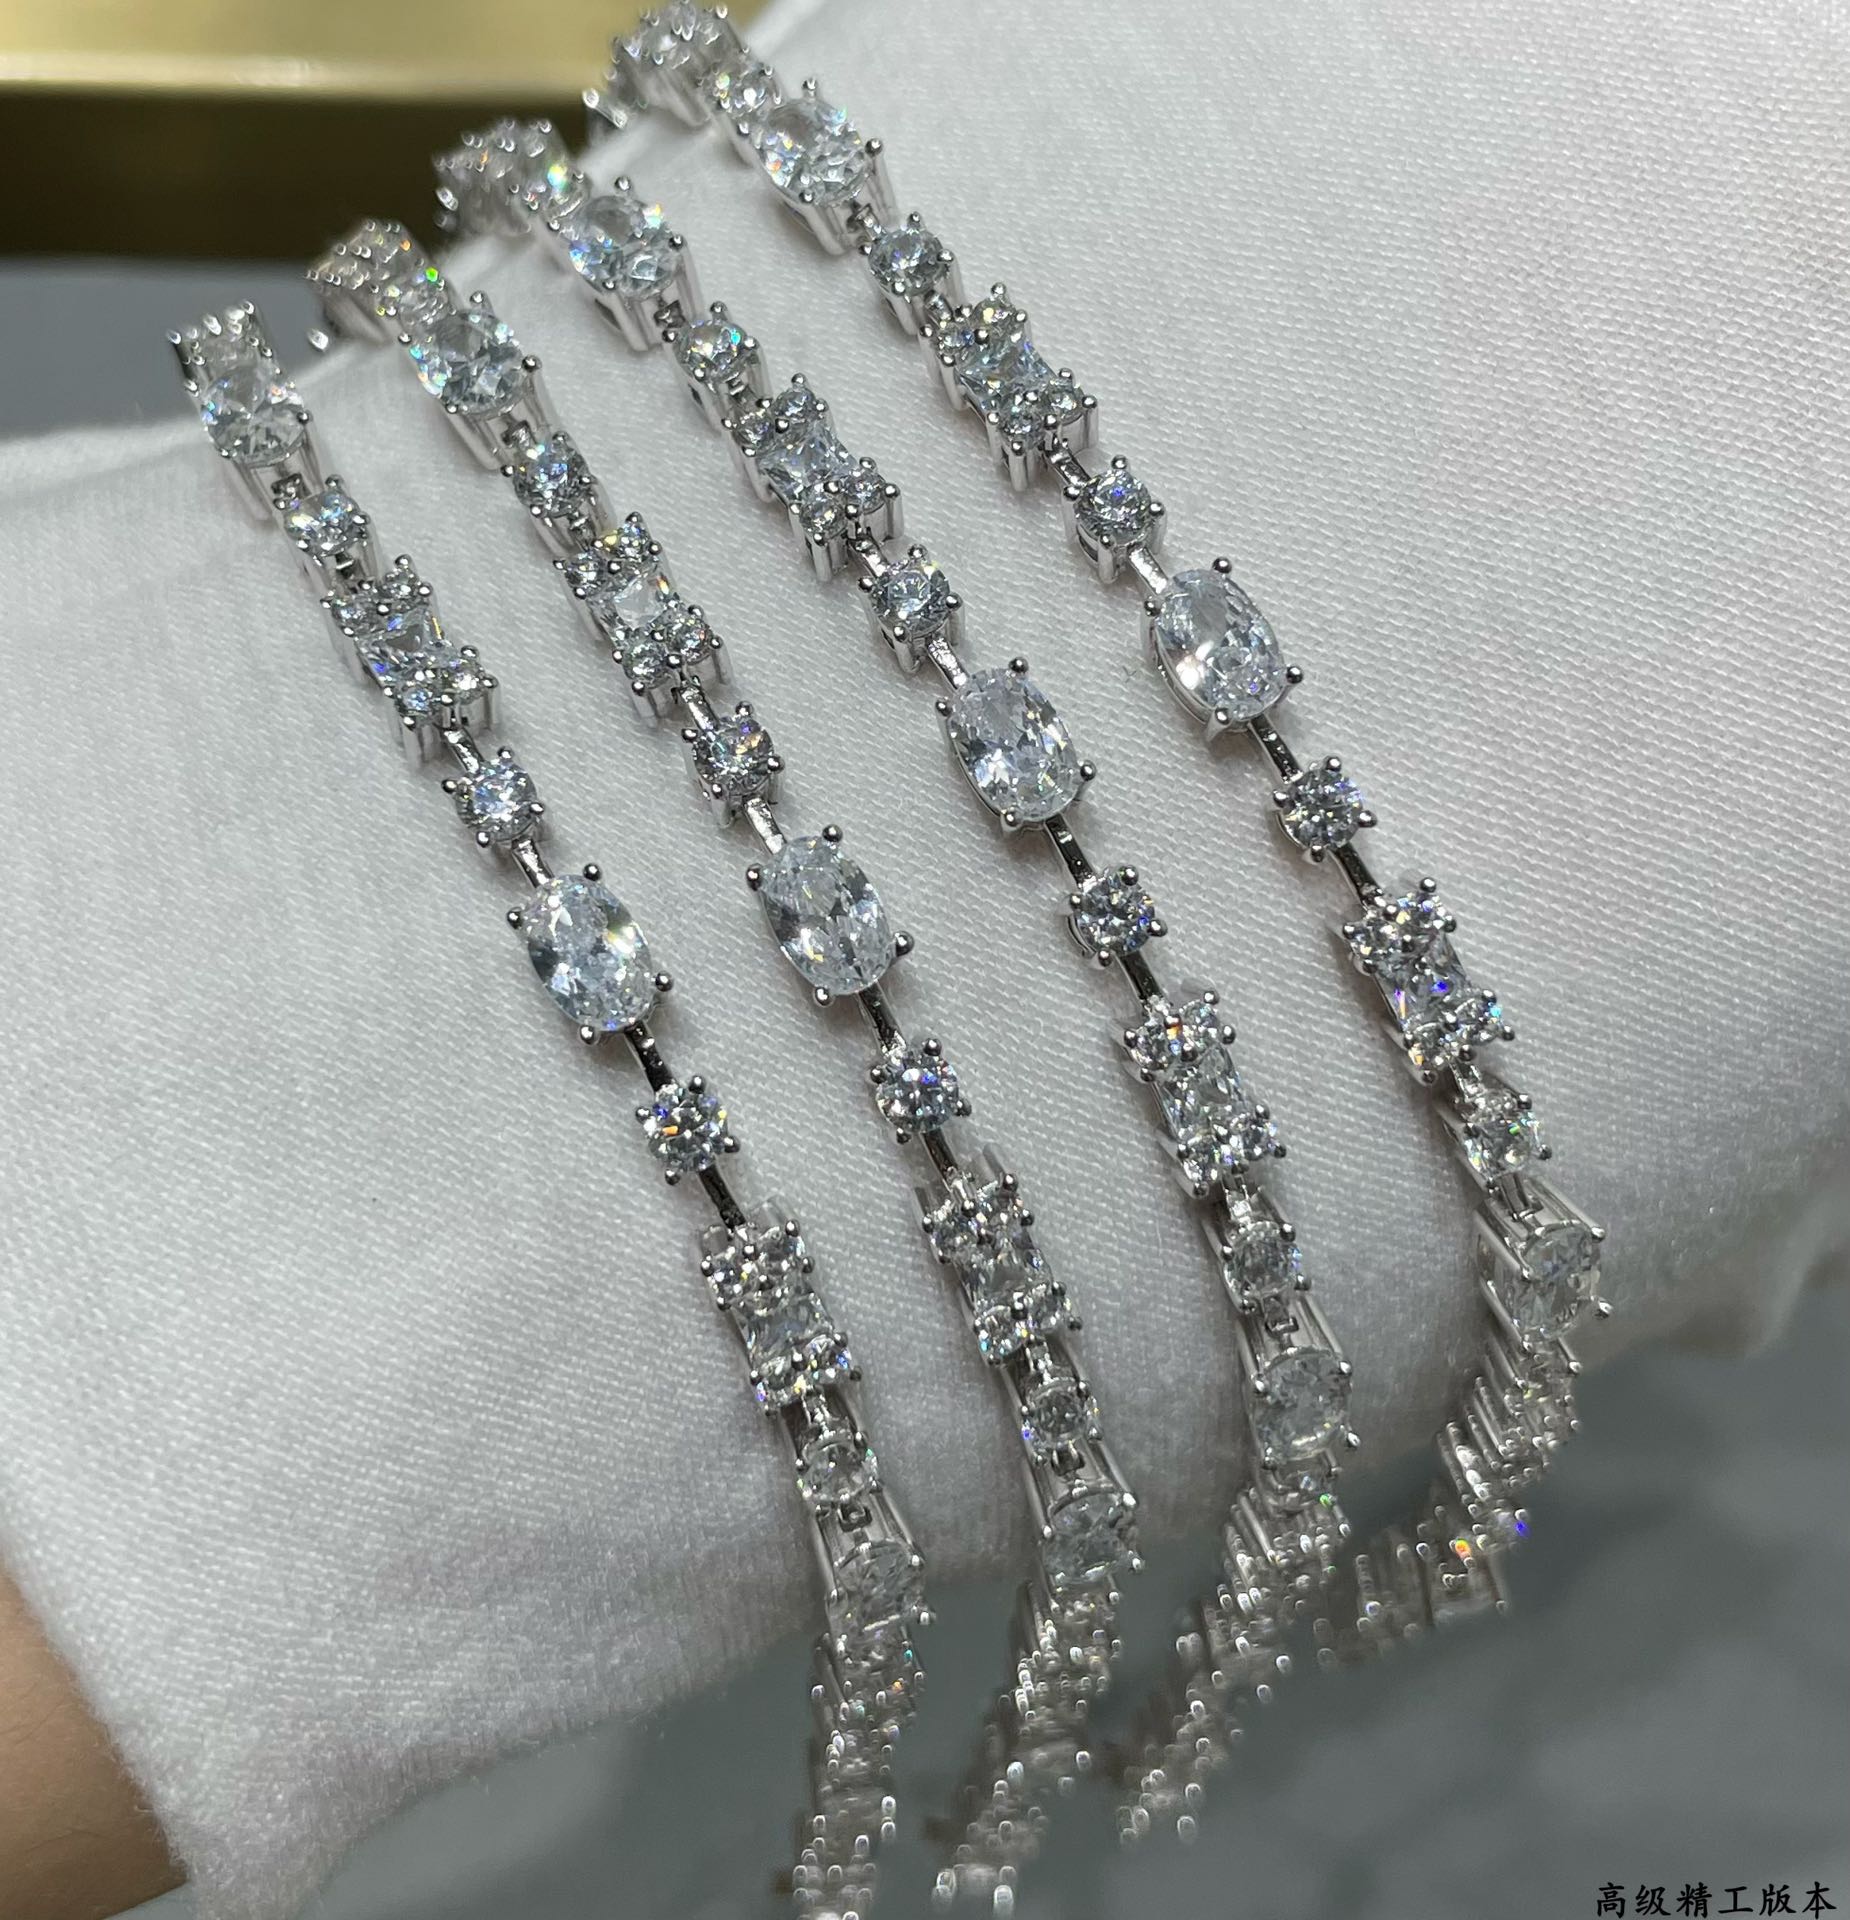 彩宝进口定制异形钻石手链没有女孩能抵挡的璀璨钻石诱惑既可以用于单独佩戴展现出大方得体优雅美丽的一面又可以